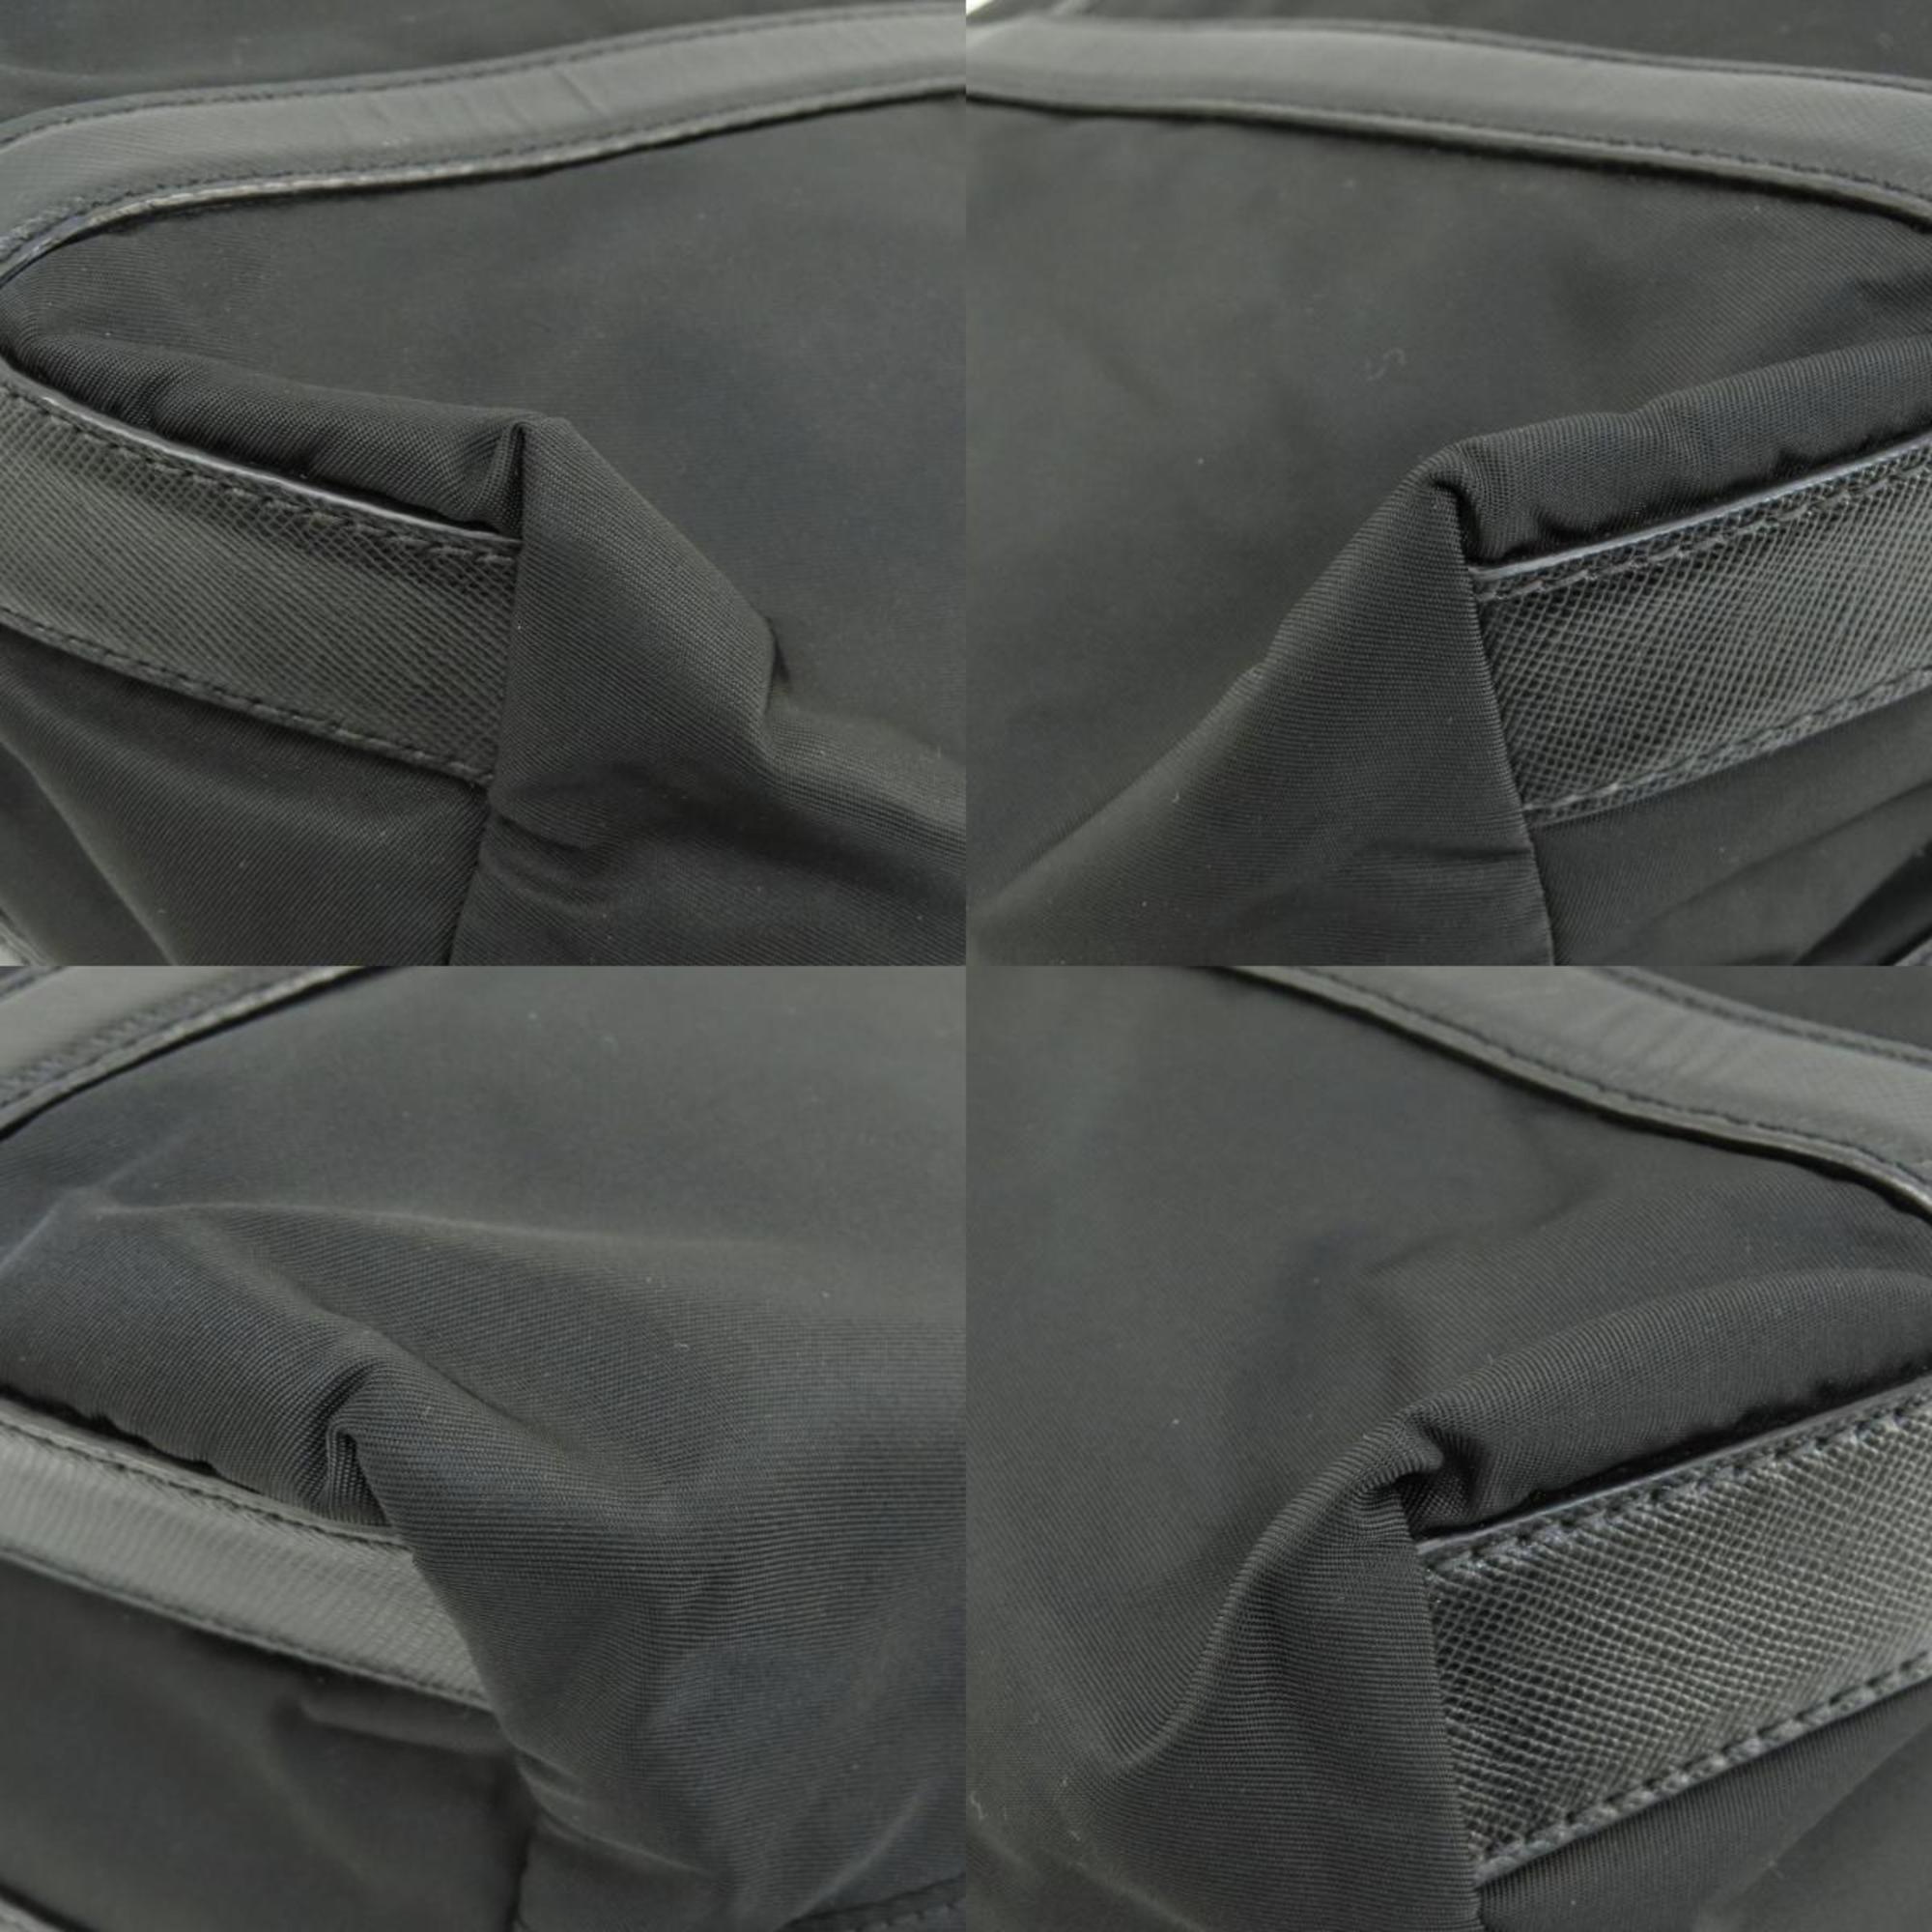 Prada BR2288 Metal fittings handbag nylon material women's PRADA